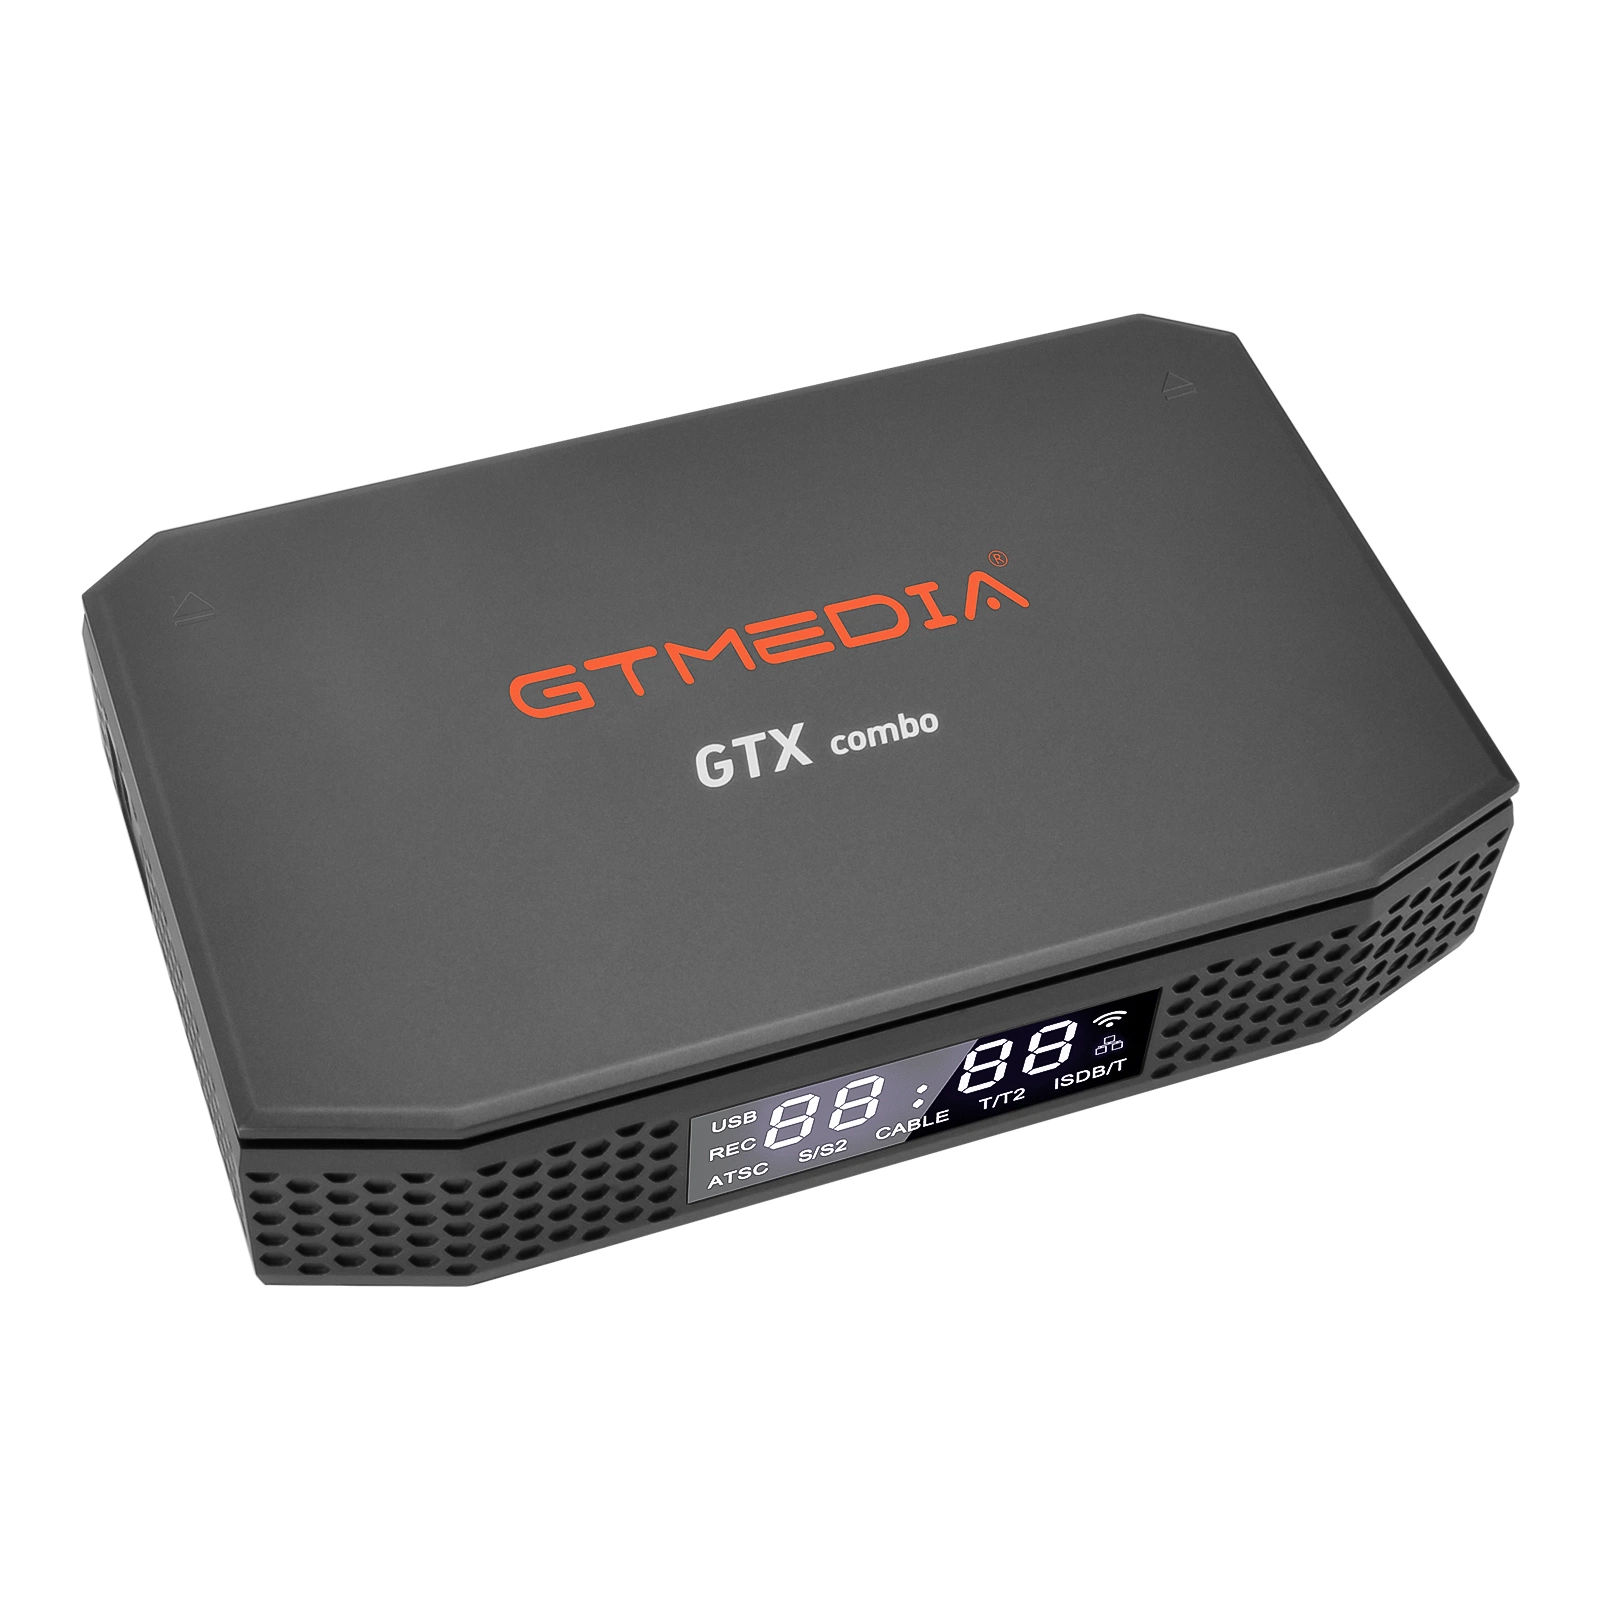 Receptor de satélite Gtmedia GTX Combo suporte a transmissão DVB 8K Ultra Set Top Box digital HD IPTV com Android 9.0